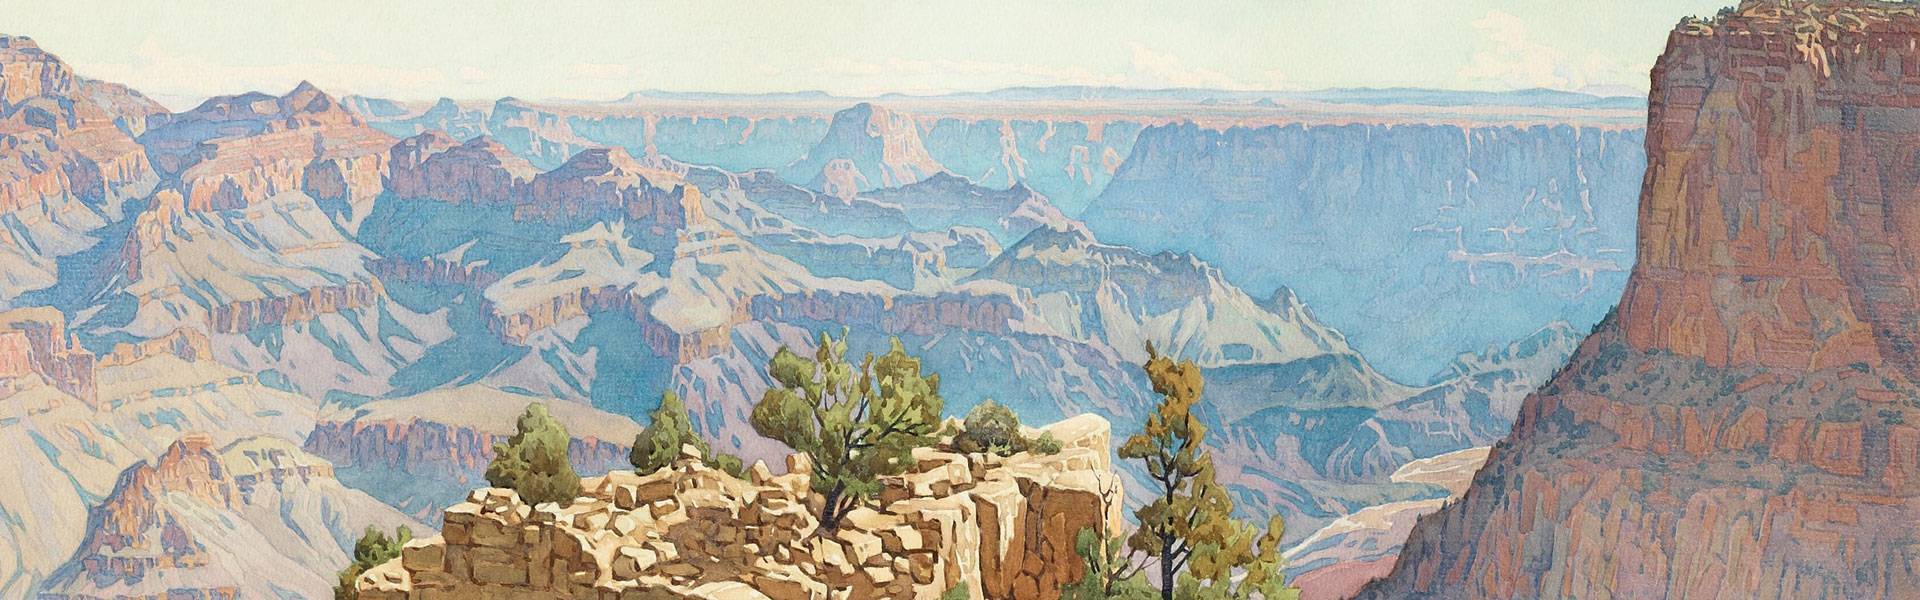 Scopri la vita di Gunnar Widforss, il pittore della "wilderness" e l'arte della fuga attraverso paesaggi incontaminati. Un viaggio nella natura selvaggia.